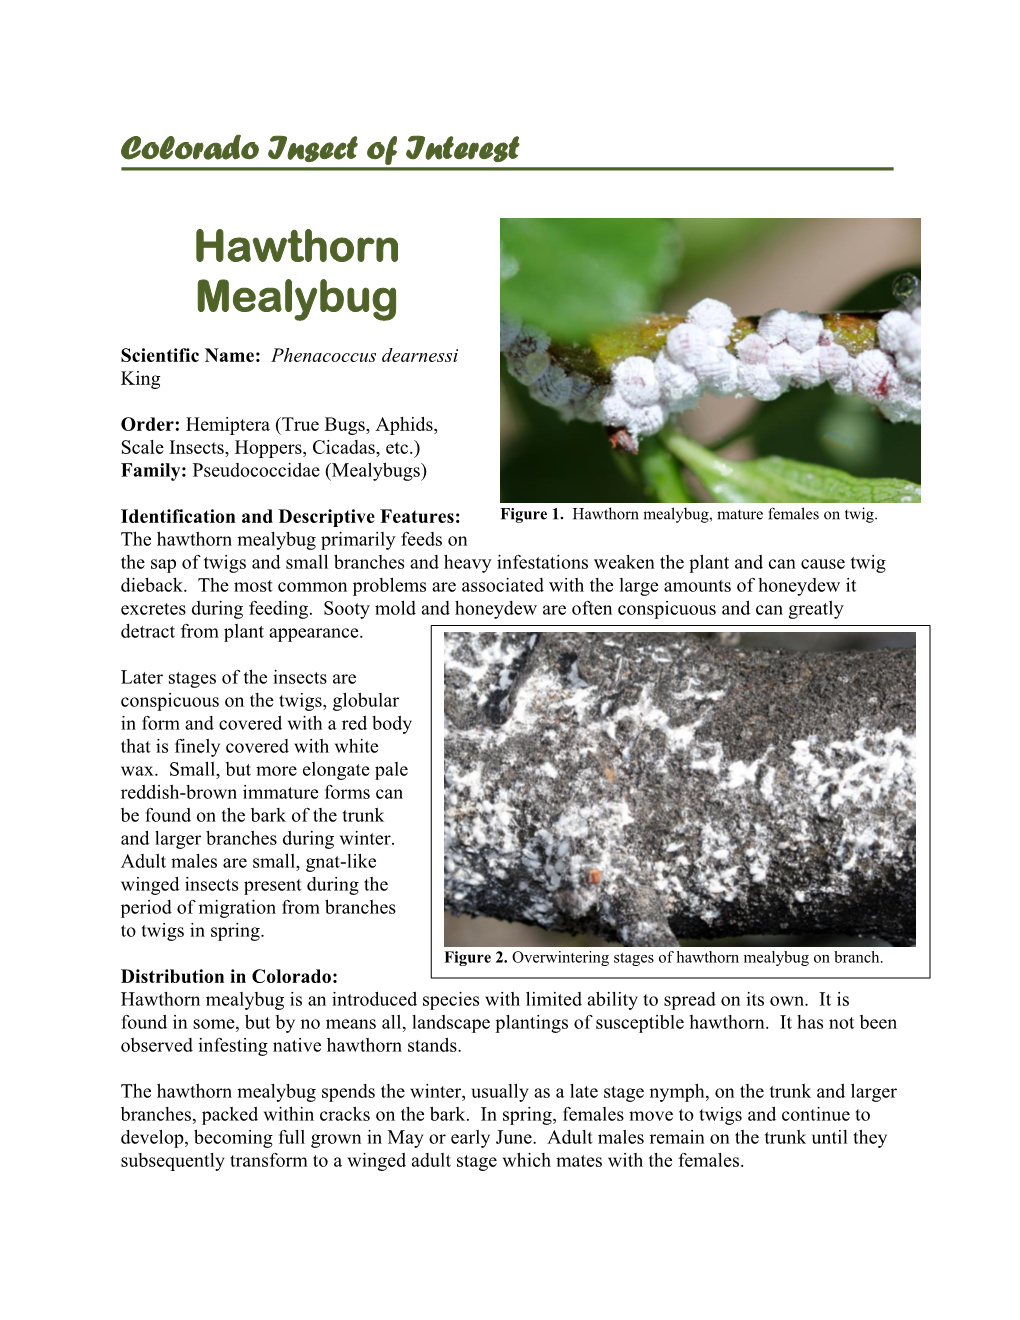 Hawthorn Mealybug